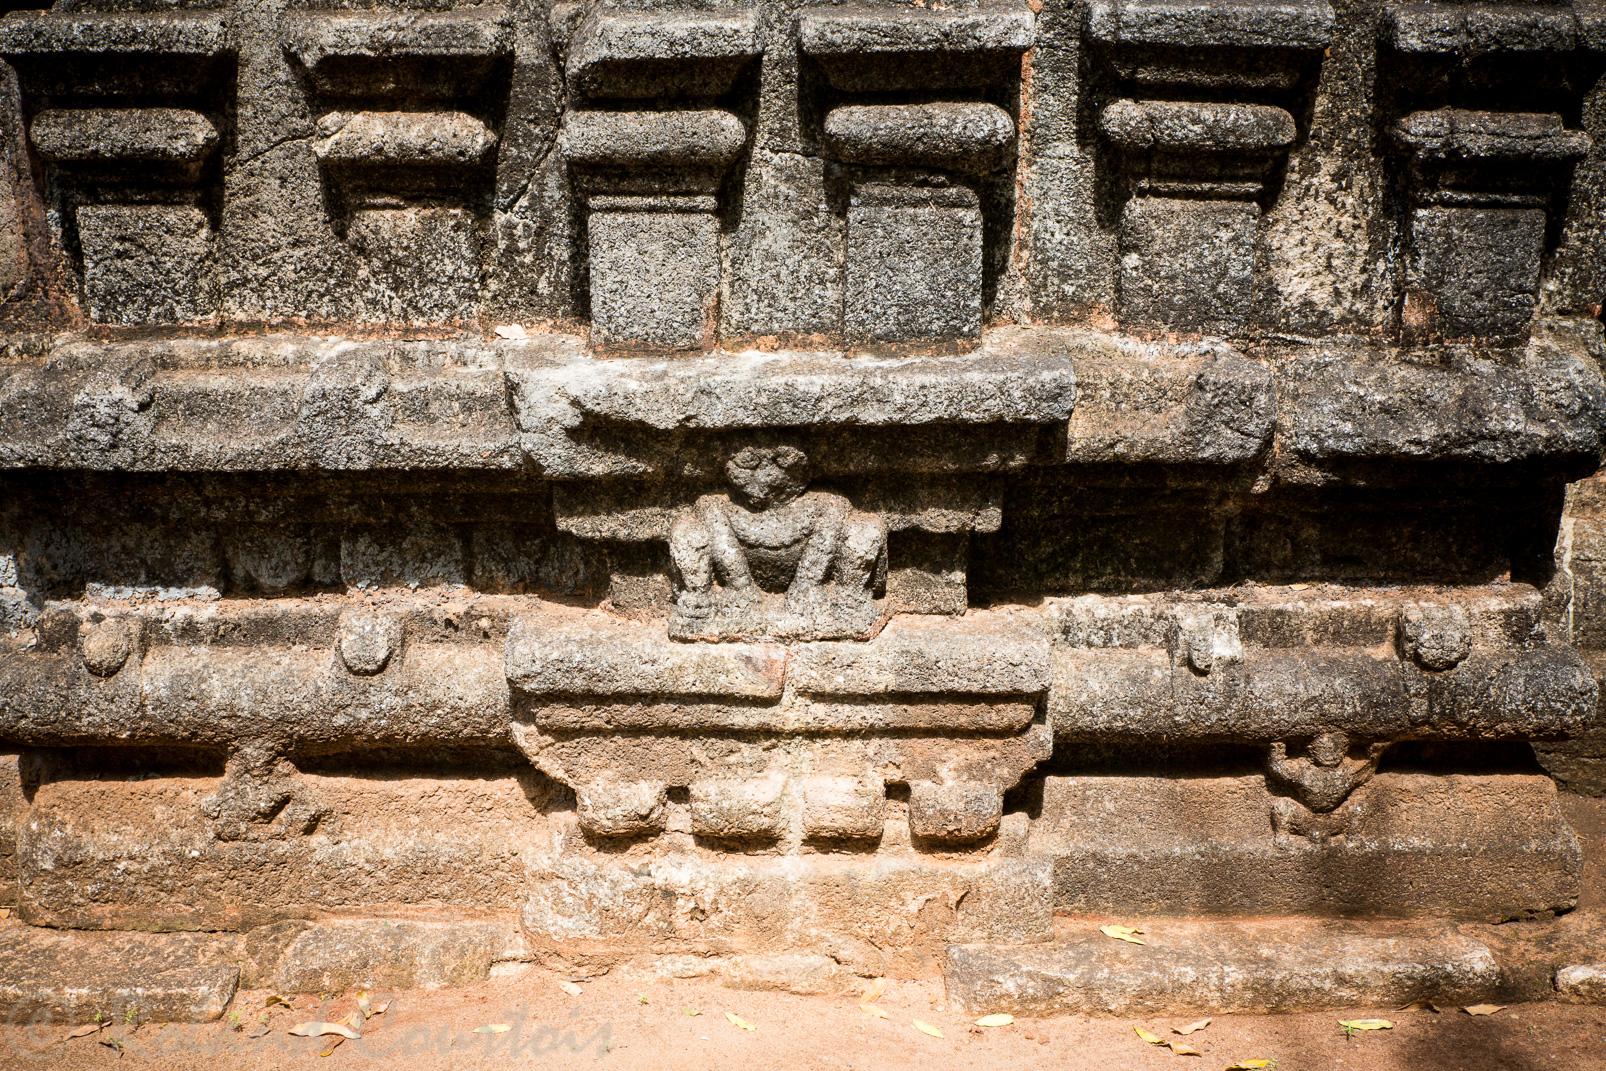 Nalanda Gegide. Bati dans le style des temples hindous de l'inde du sud. Certaines plinthes arborent des sculptures érotiques